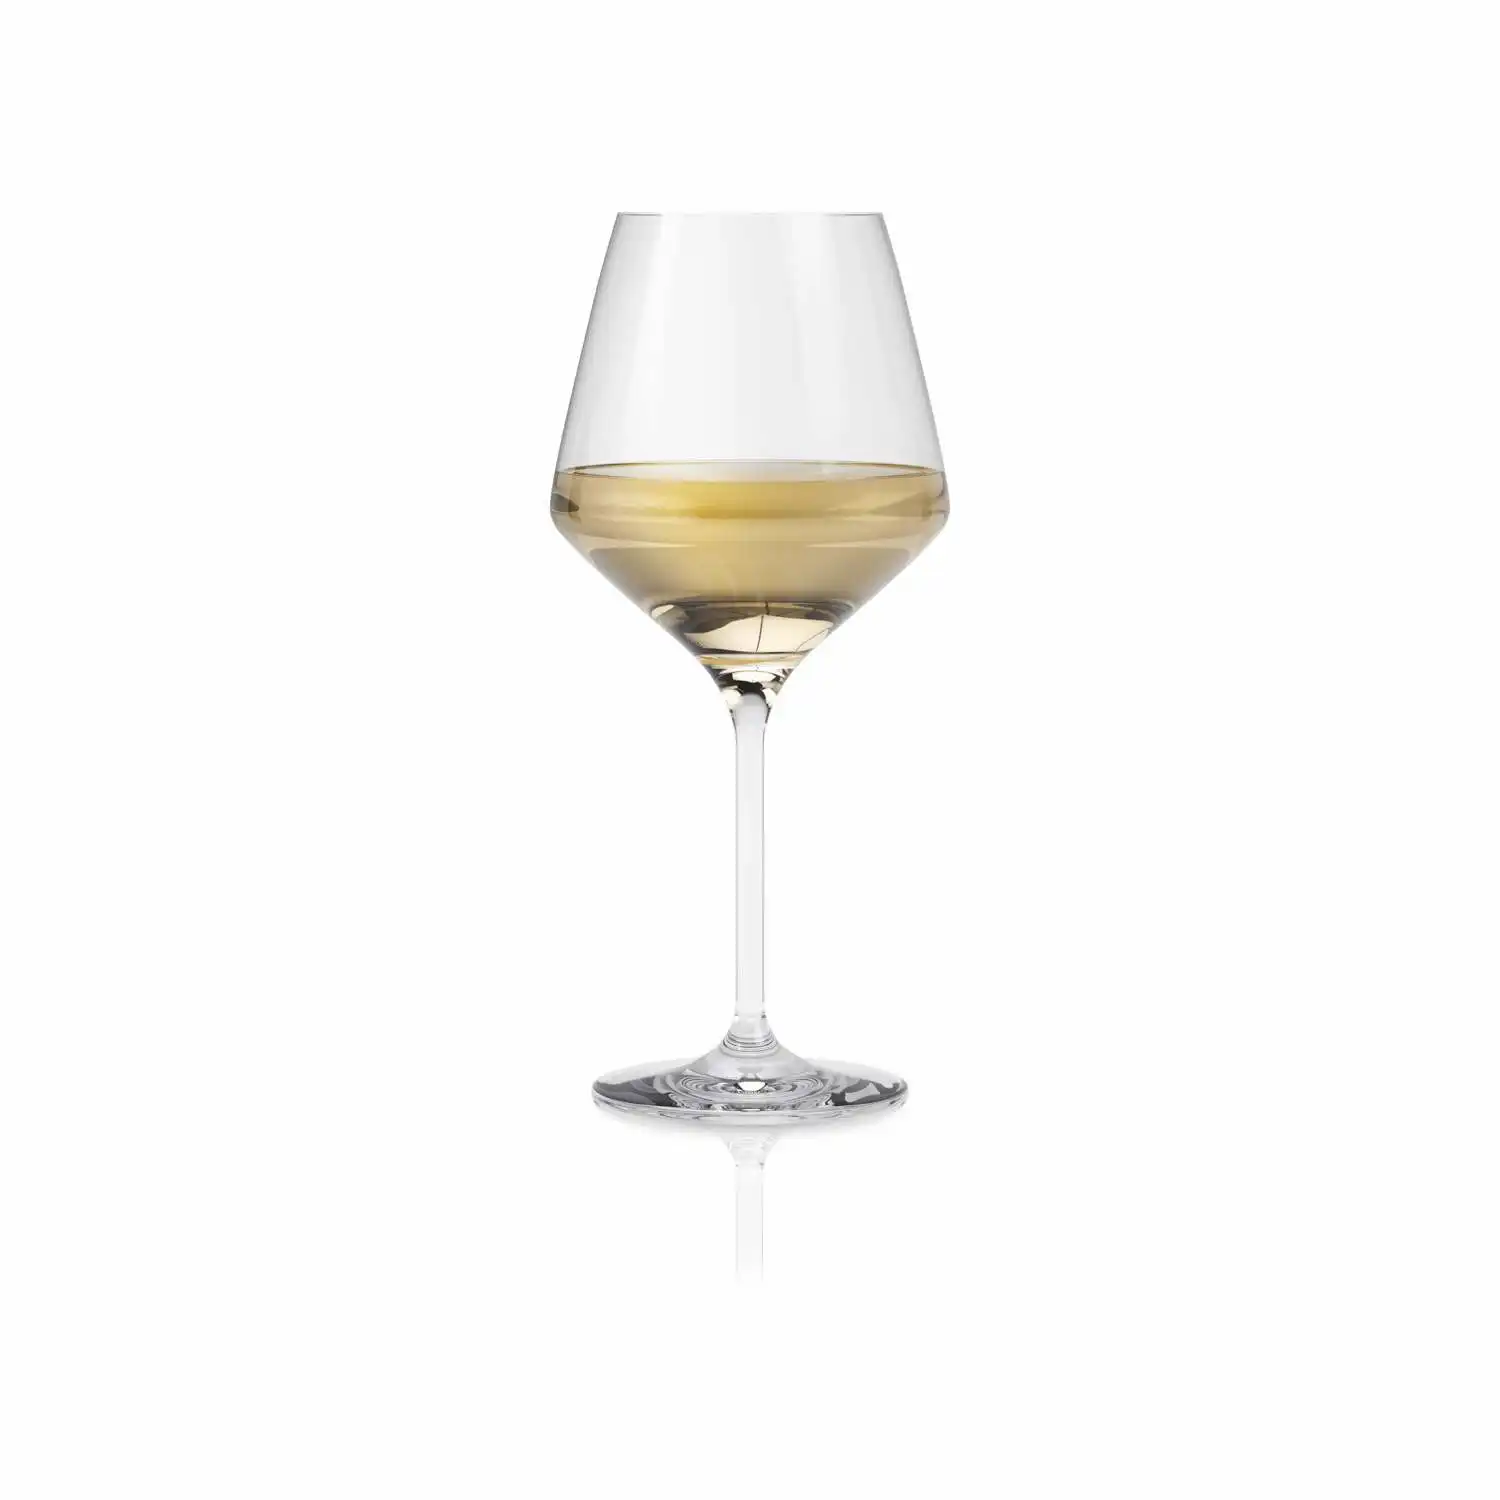 541205-white-wine-glass-legio-nova-1pcs-regi-shadow.webp